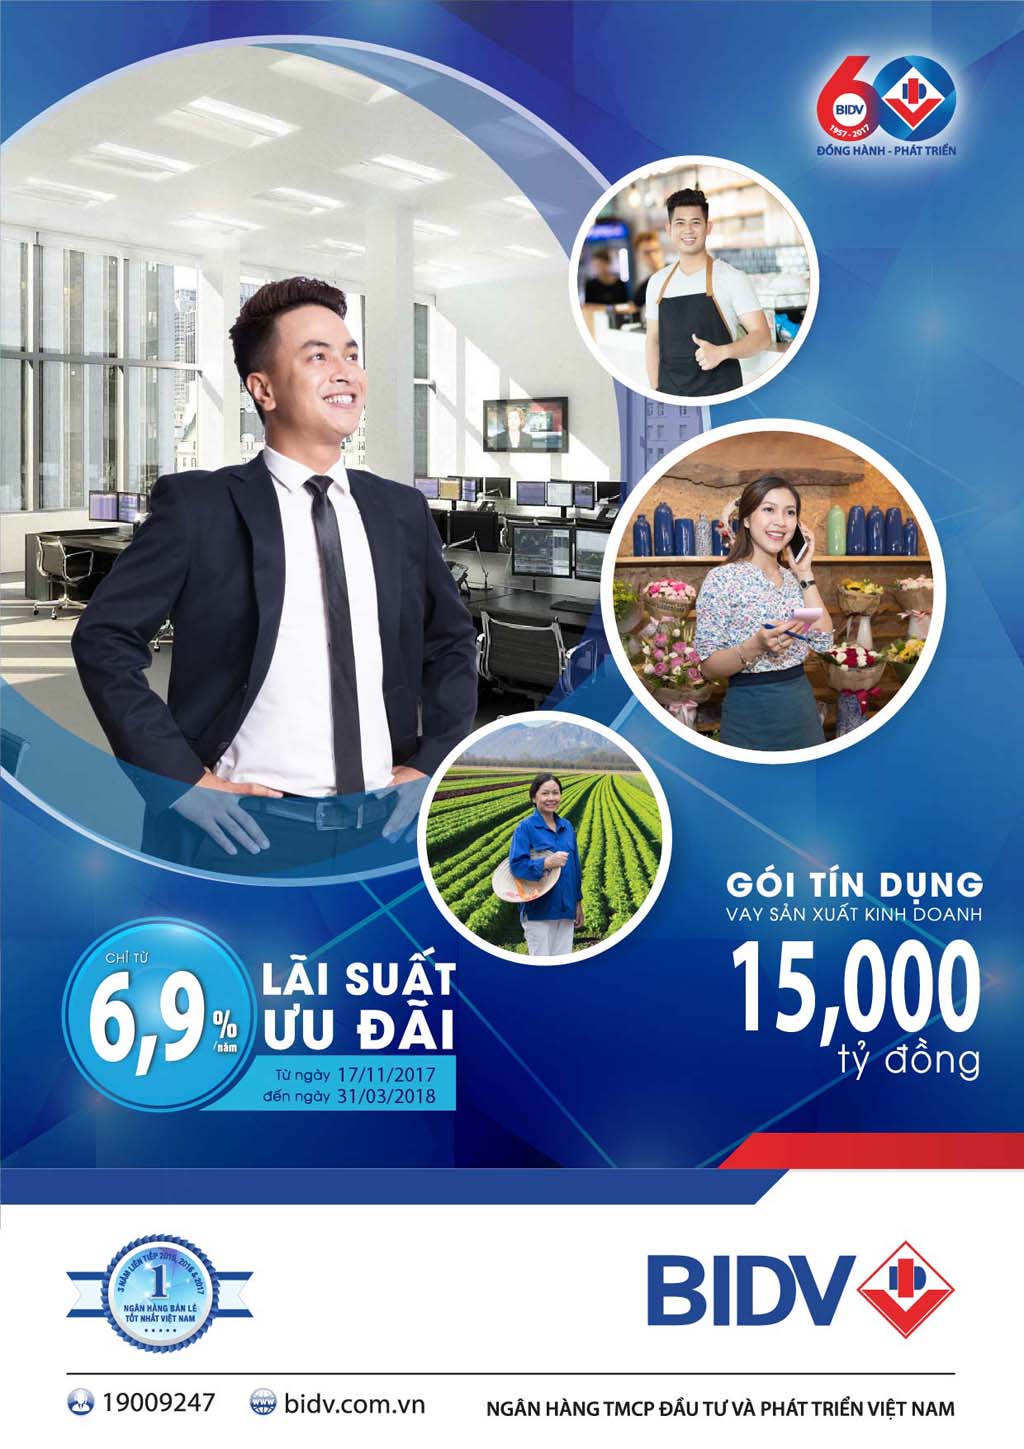 Gói tín dụng phục vụ nhóm khách hàng cá nhân, hộ gia đình kinh doanh với quy mô lên đến 15.000 tỉ đồng của BIDV đang gây nhiều chú ý với giới startup Việt